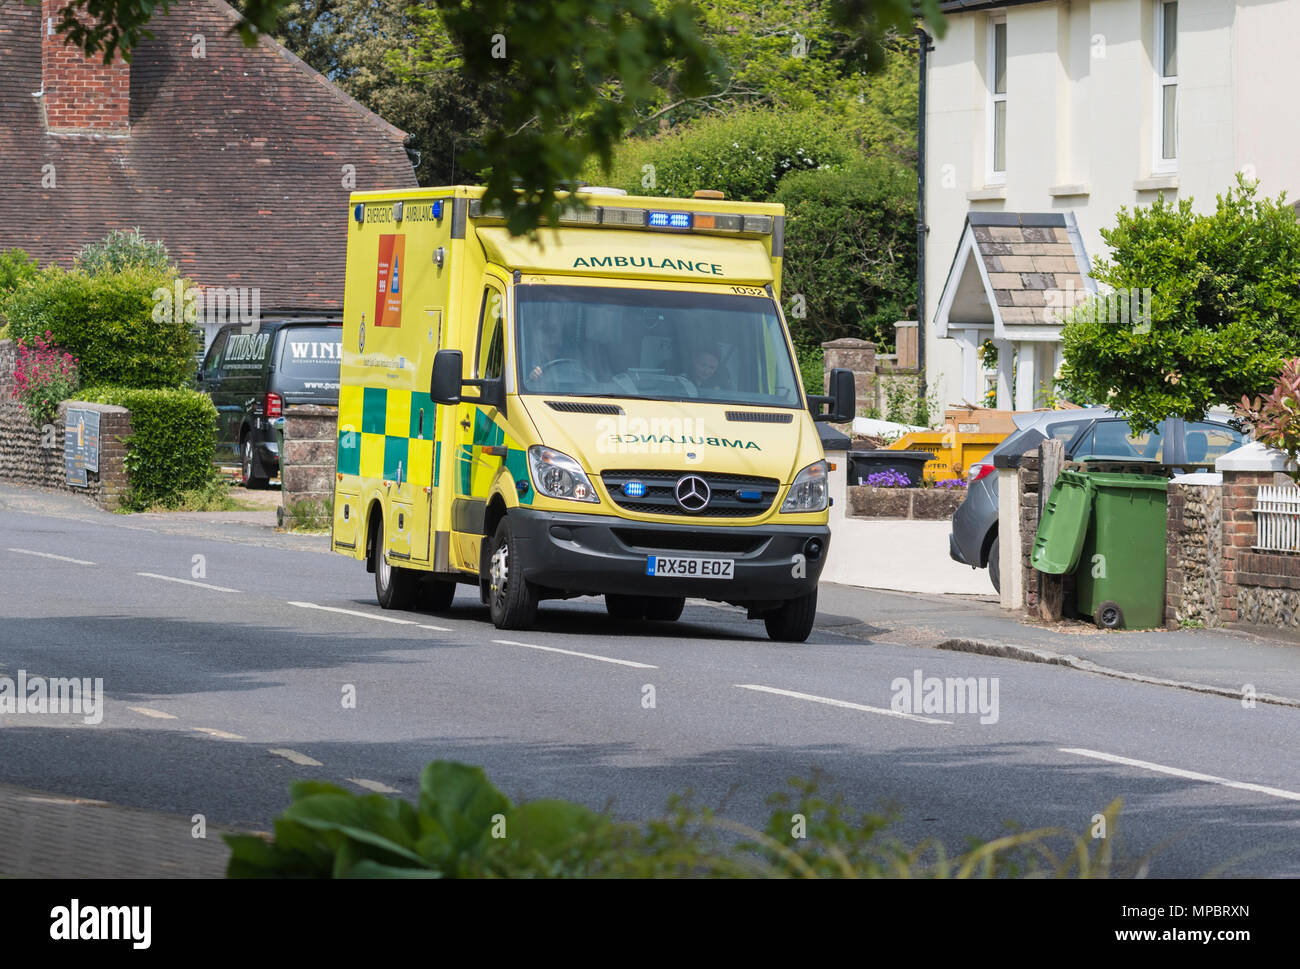 British NHS ambulance du South East Coast Ambulance Service sur appel avec feux clignotants à West Sussex, Angleterre, Royaume-Uni. Mercedes Benz Sprinter 518 CDI Banque D'Images